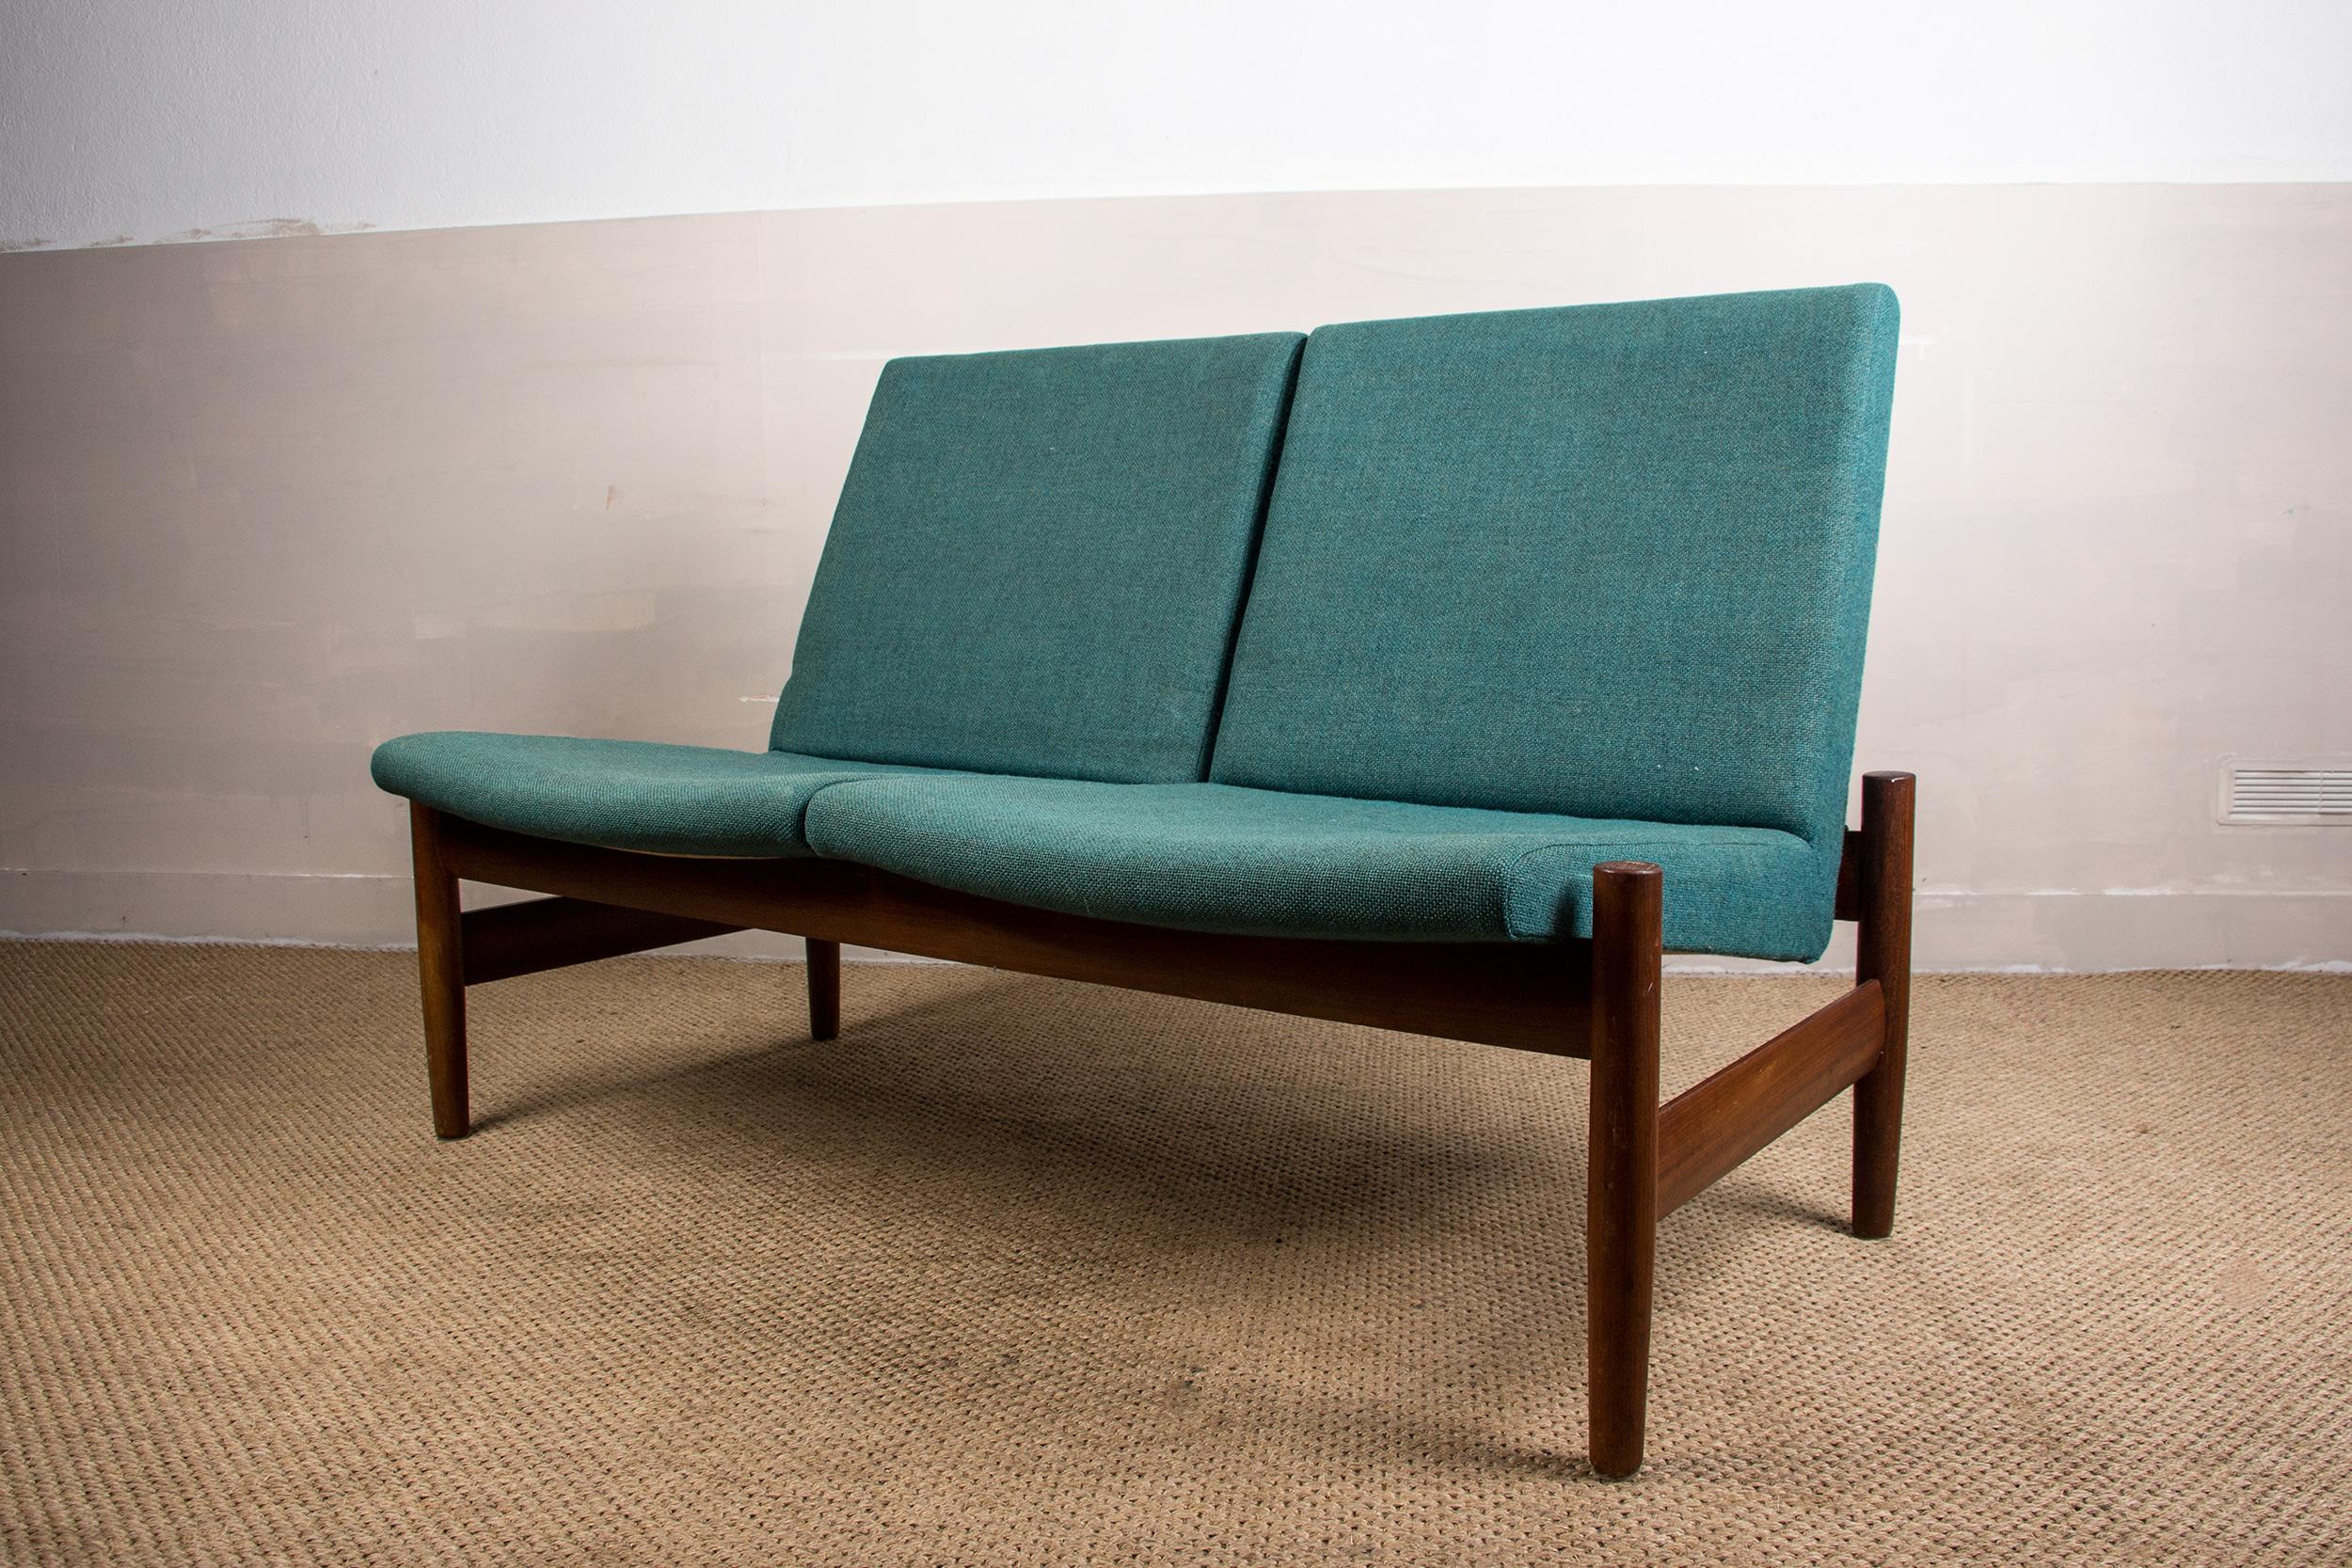 Mid-20th Century Scandinavian Teak & Fabric 2-Seat Sofa by Gunnar Sørlie for Karl Sørlie & Sønner